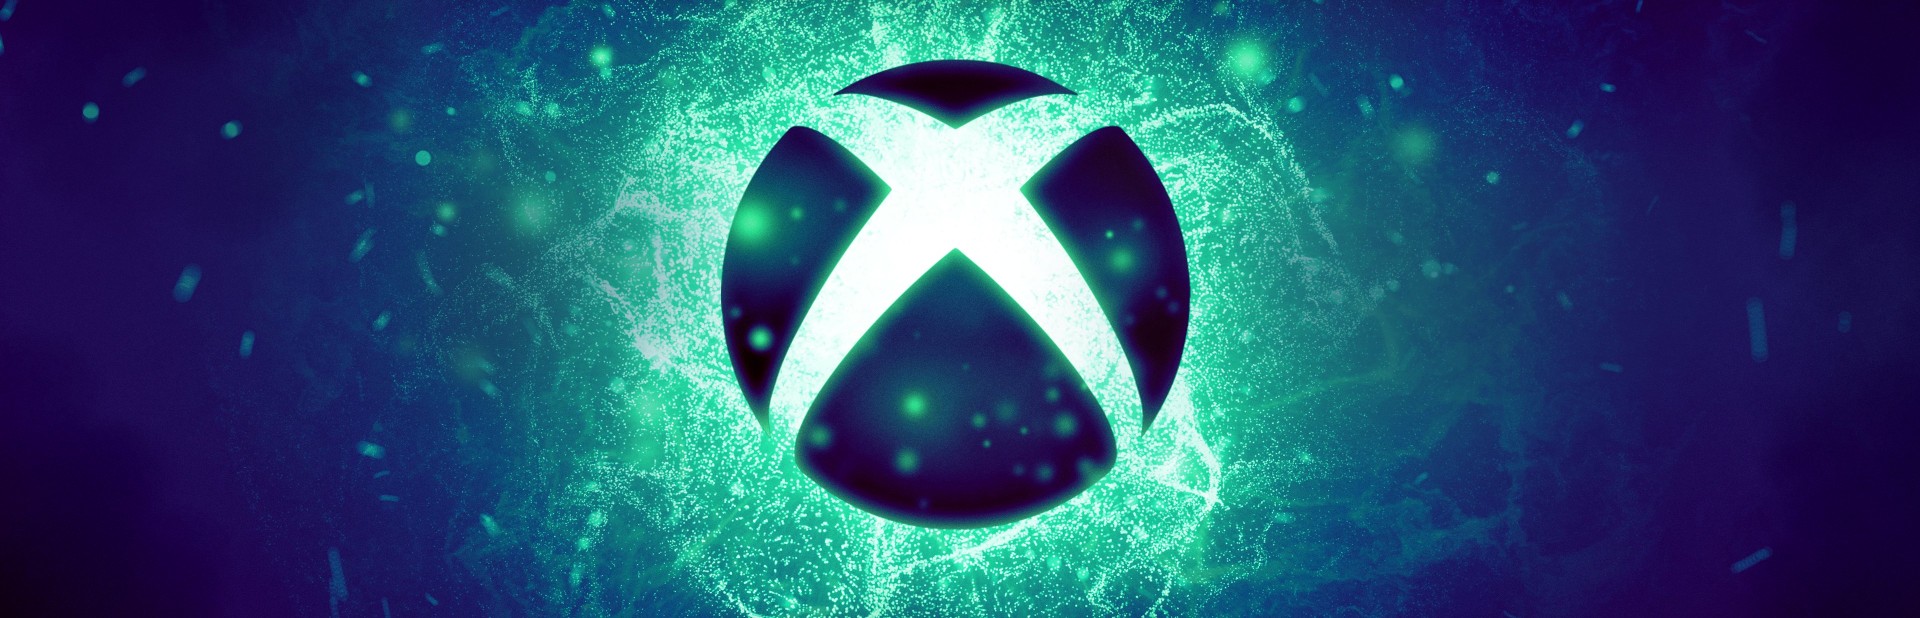 Phil Spencer เผย Xbox เติบโตในตลาดญี่ปุ่นมากขึ้น รวมถึงความสัมพันธ์กับสตูดิโอเกมก็ดีขึ้นด้วย